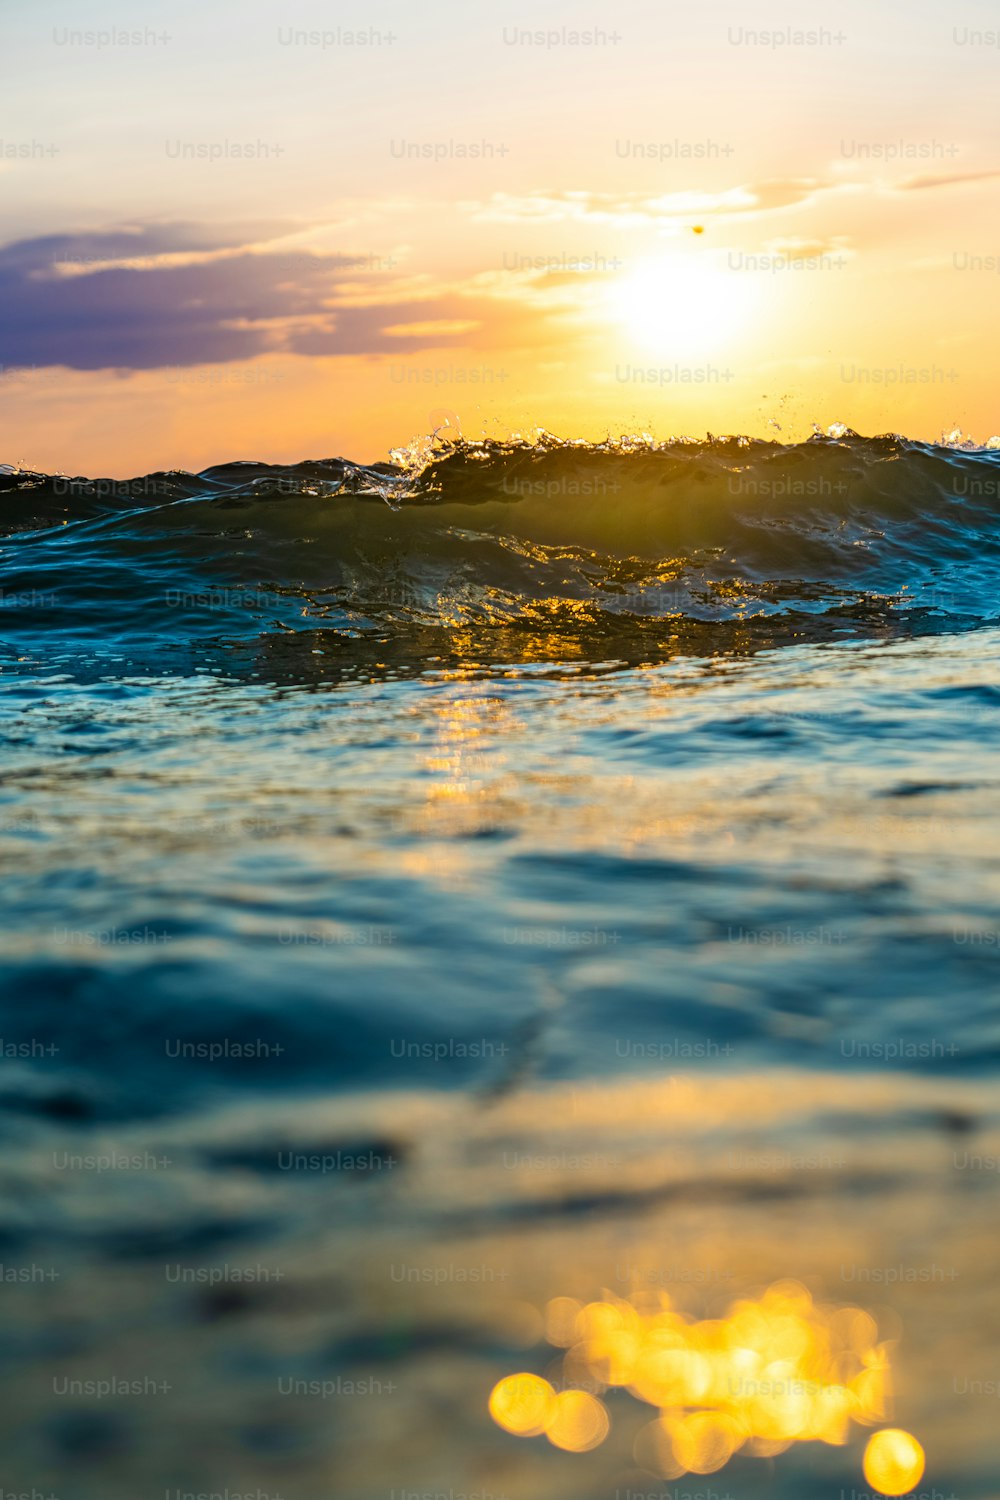 Il sole sta tramontando sulle onde dell'oceano